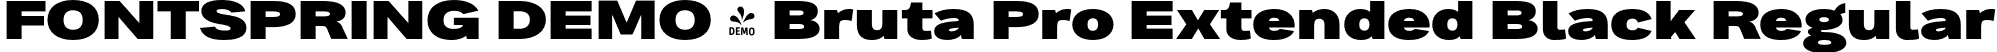 FONTSPRING DEMO - Bruta Pro Extended Black Regular font | Fontspring-DEMO-brutaproextended-black.otf